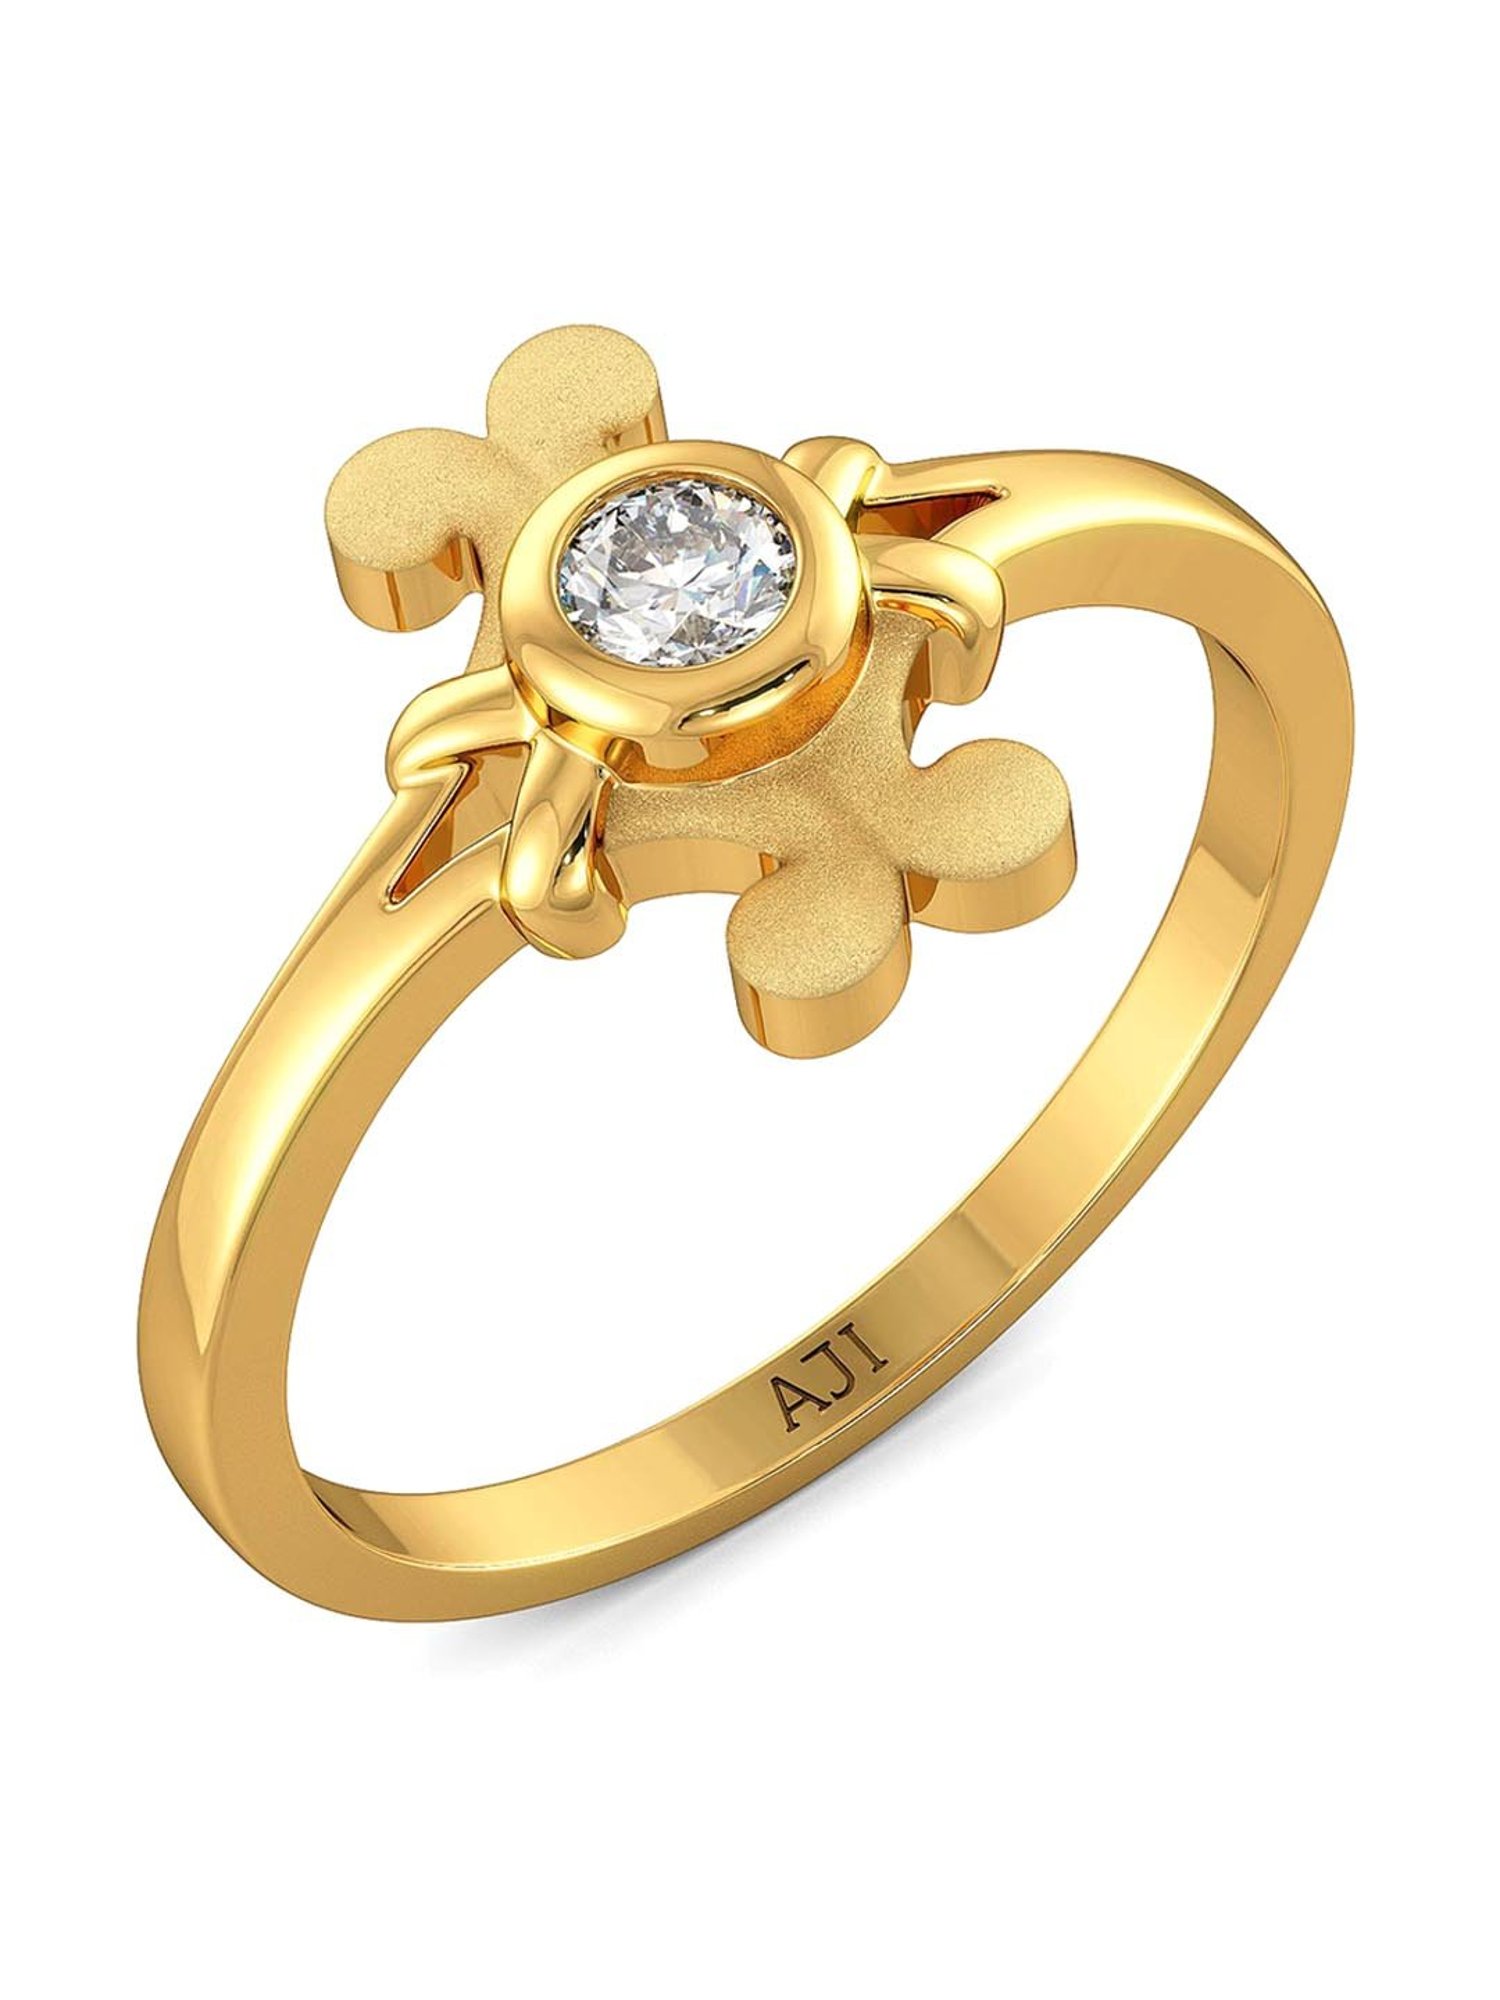 Ethnic Gold Finger Ring | JKJ Jewellers |